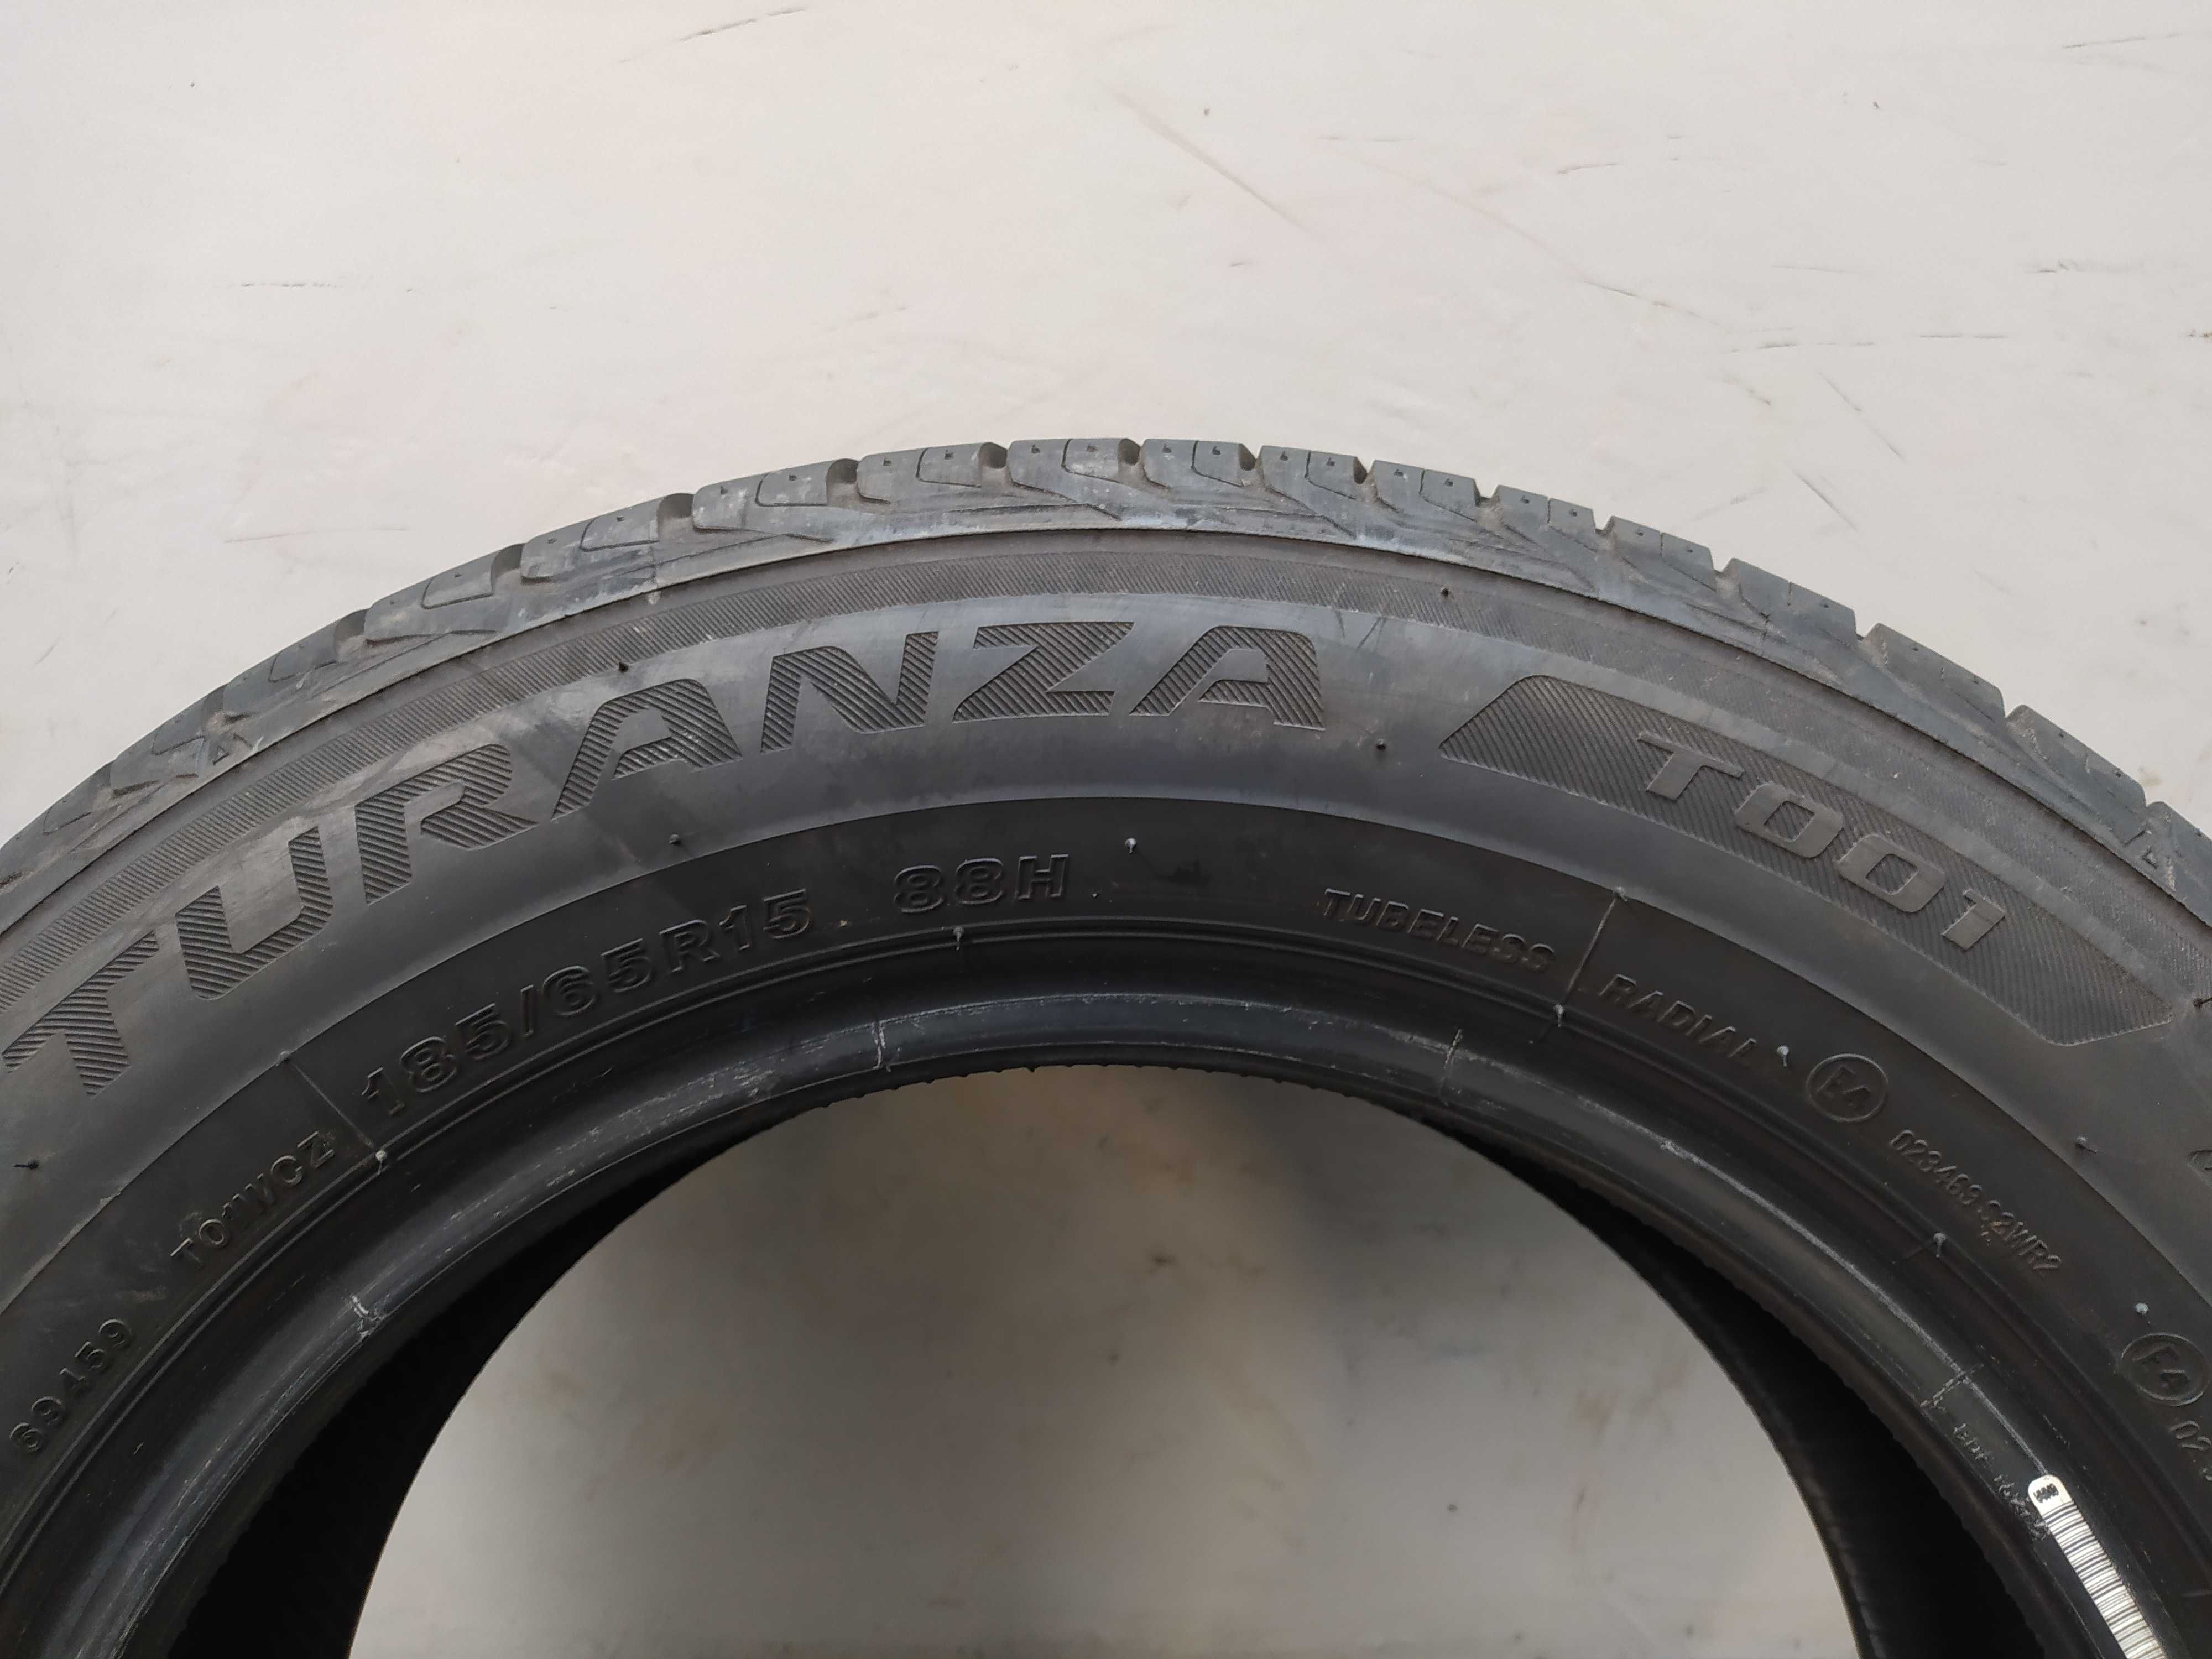 1x185/65R15 Bridgestone Turanza T001, 2017 rok, 88H, bieżnik 7mm